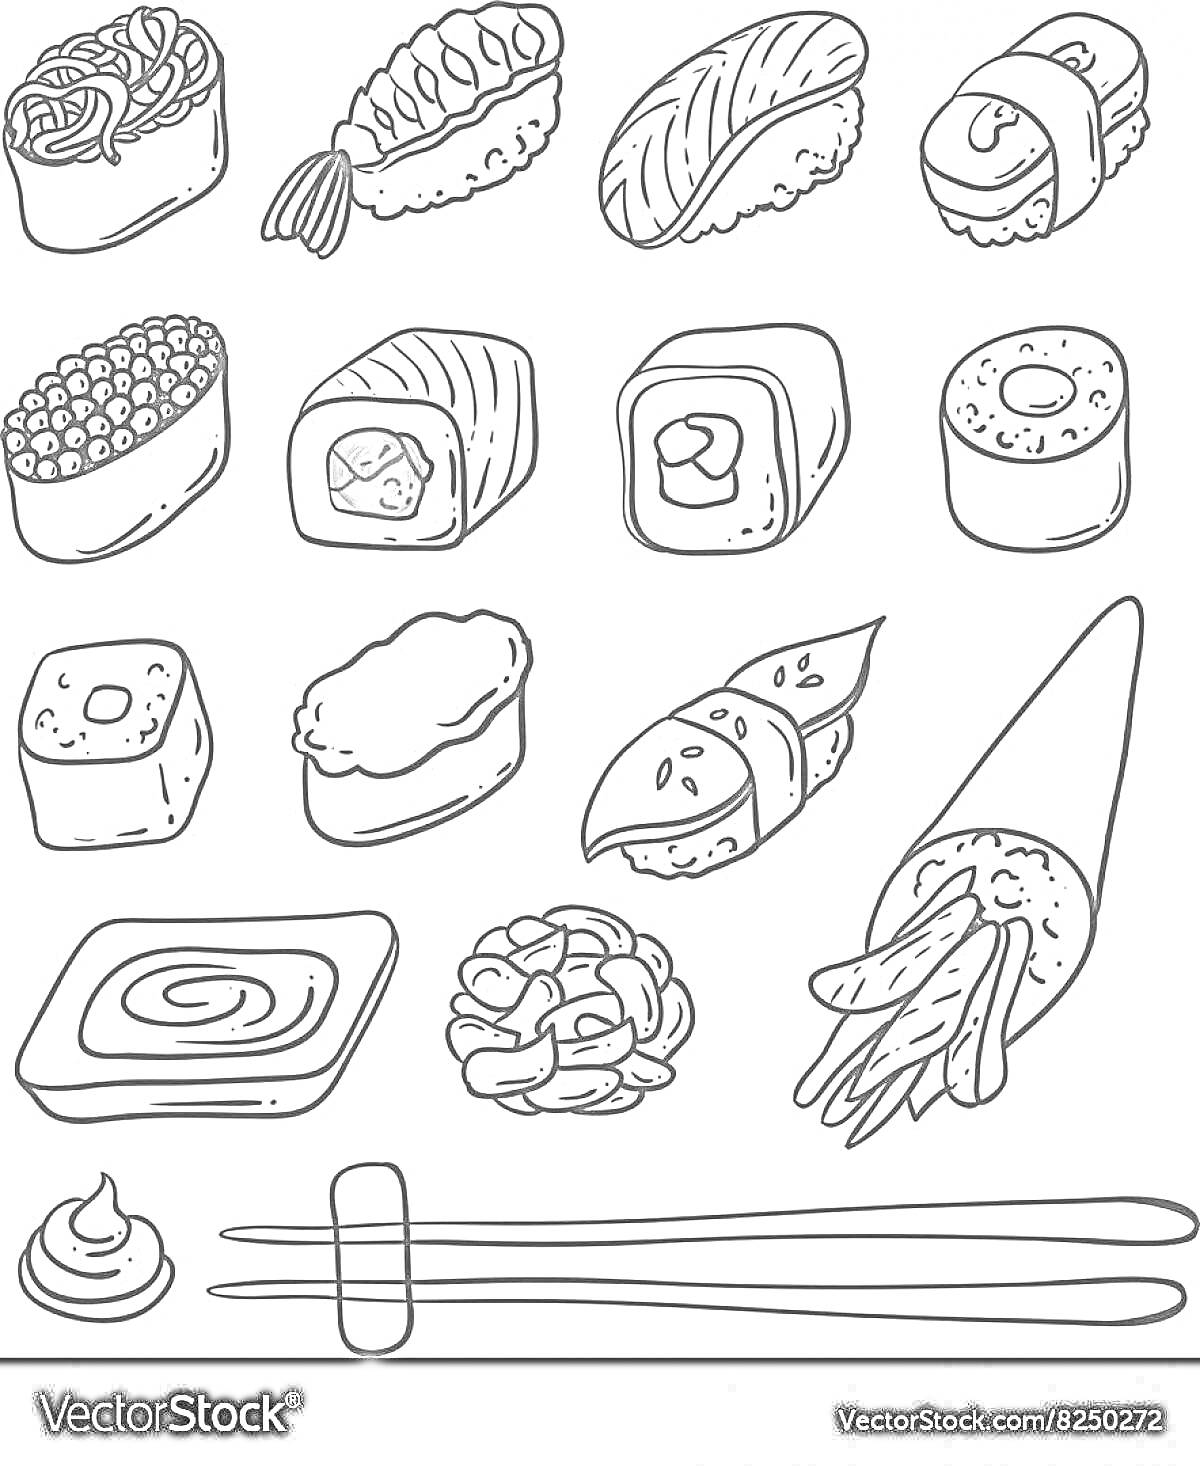 Раскраска Набор различных видов суши с роллами, нигири, гунканами, сашими, васаби, палочками для еды и деревянной подставкой